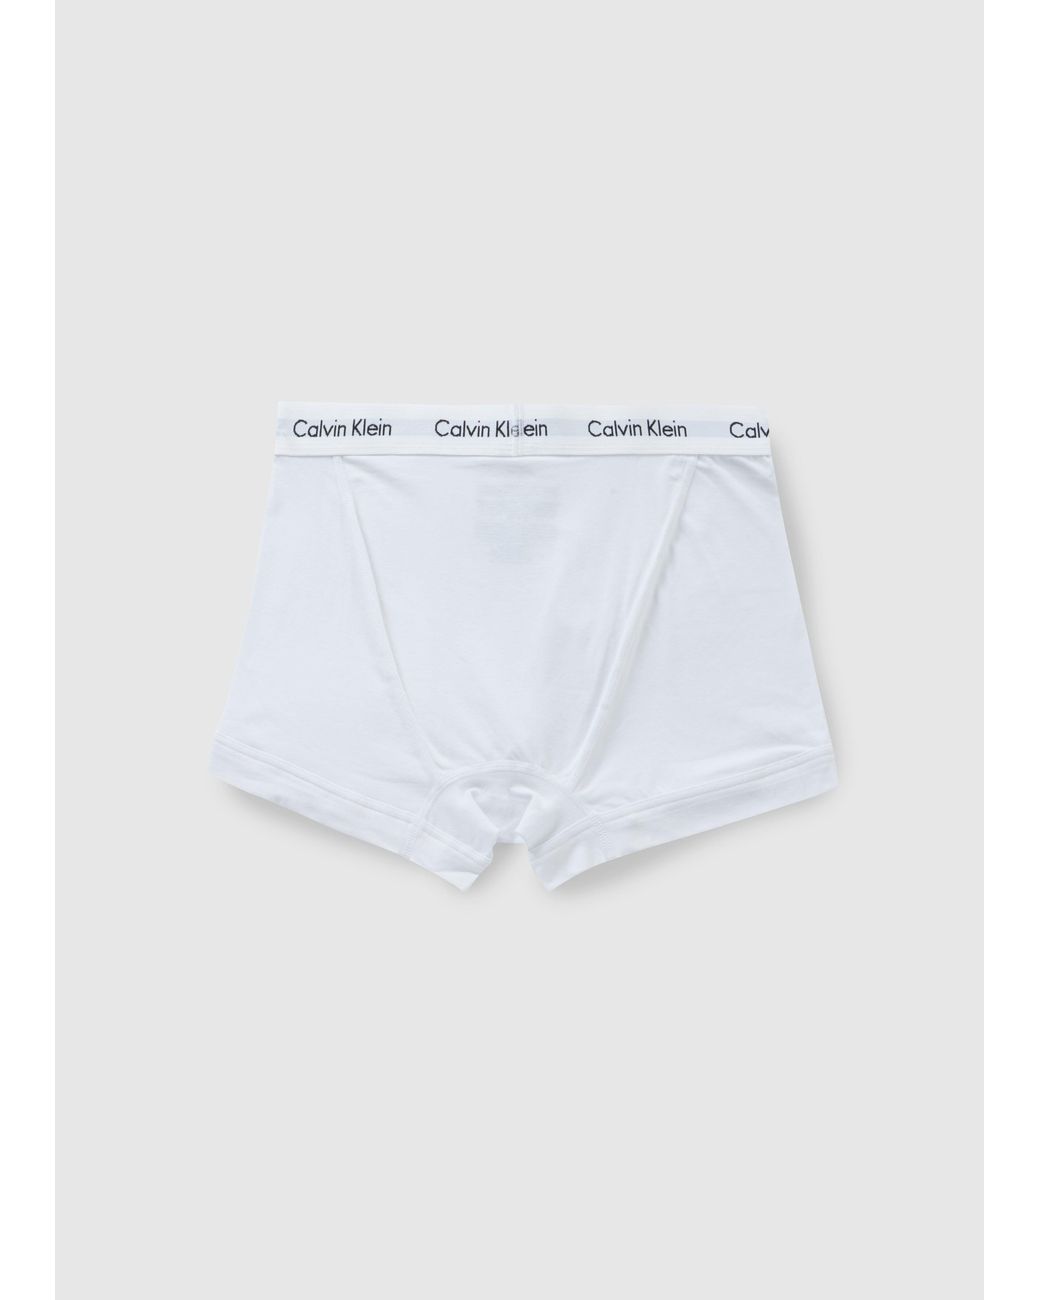 Calvin Klein Cotton Underwear 3 Pack Trunks in White for Men - Save 19% |  Lyst